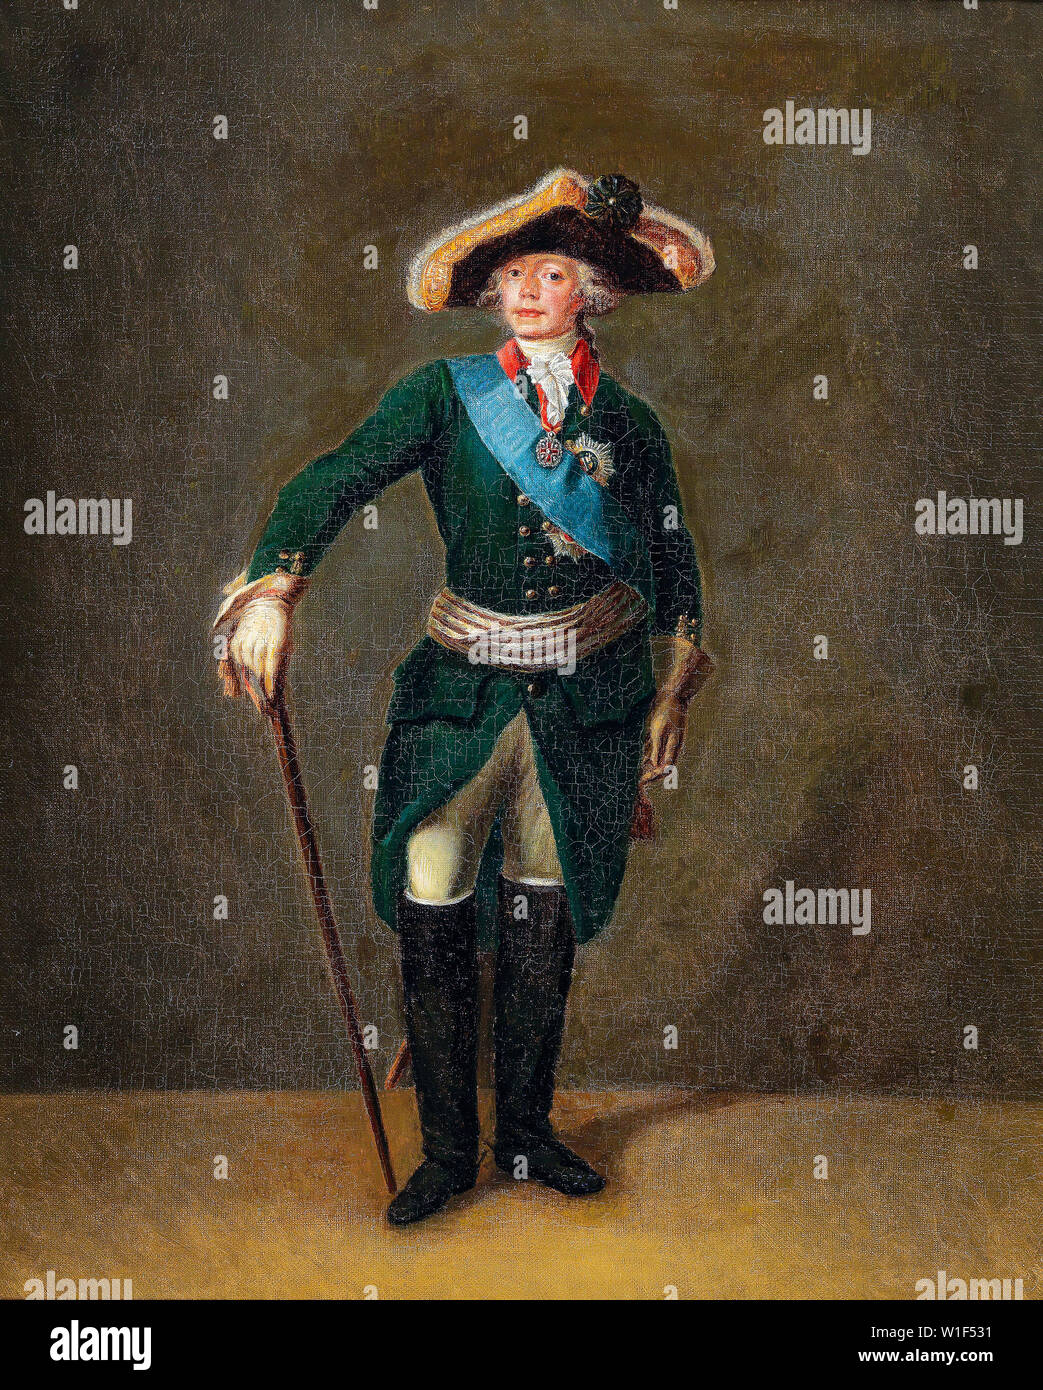 L'Empereur Paul Ier de Russie, 1754-1801, en uniforme militaire, portrait, vers 1800 Banque D'Images